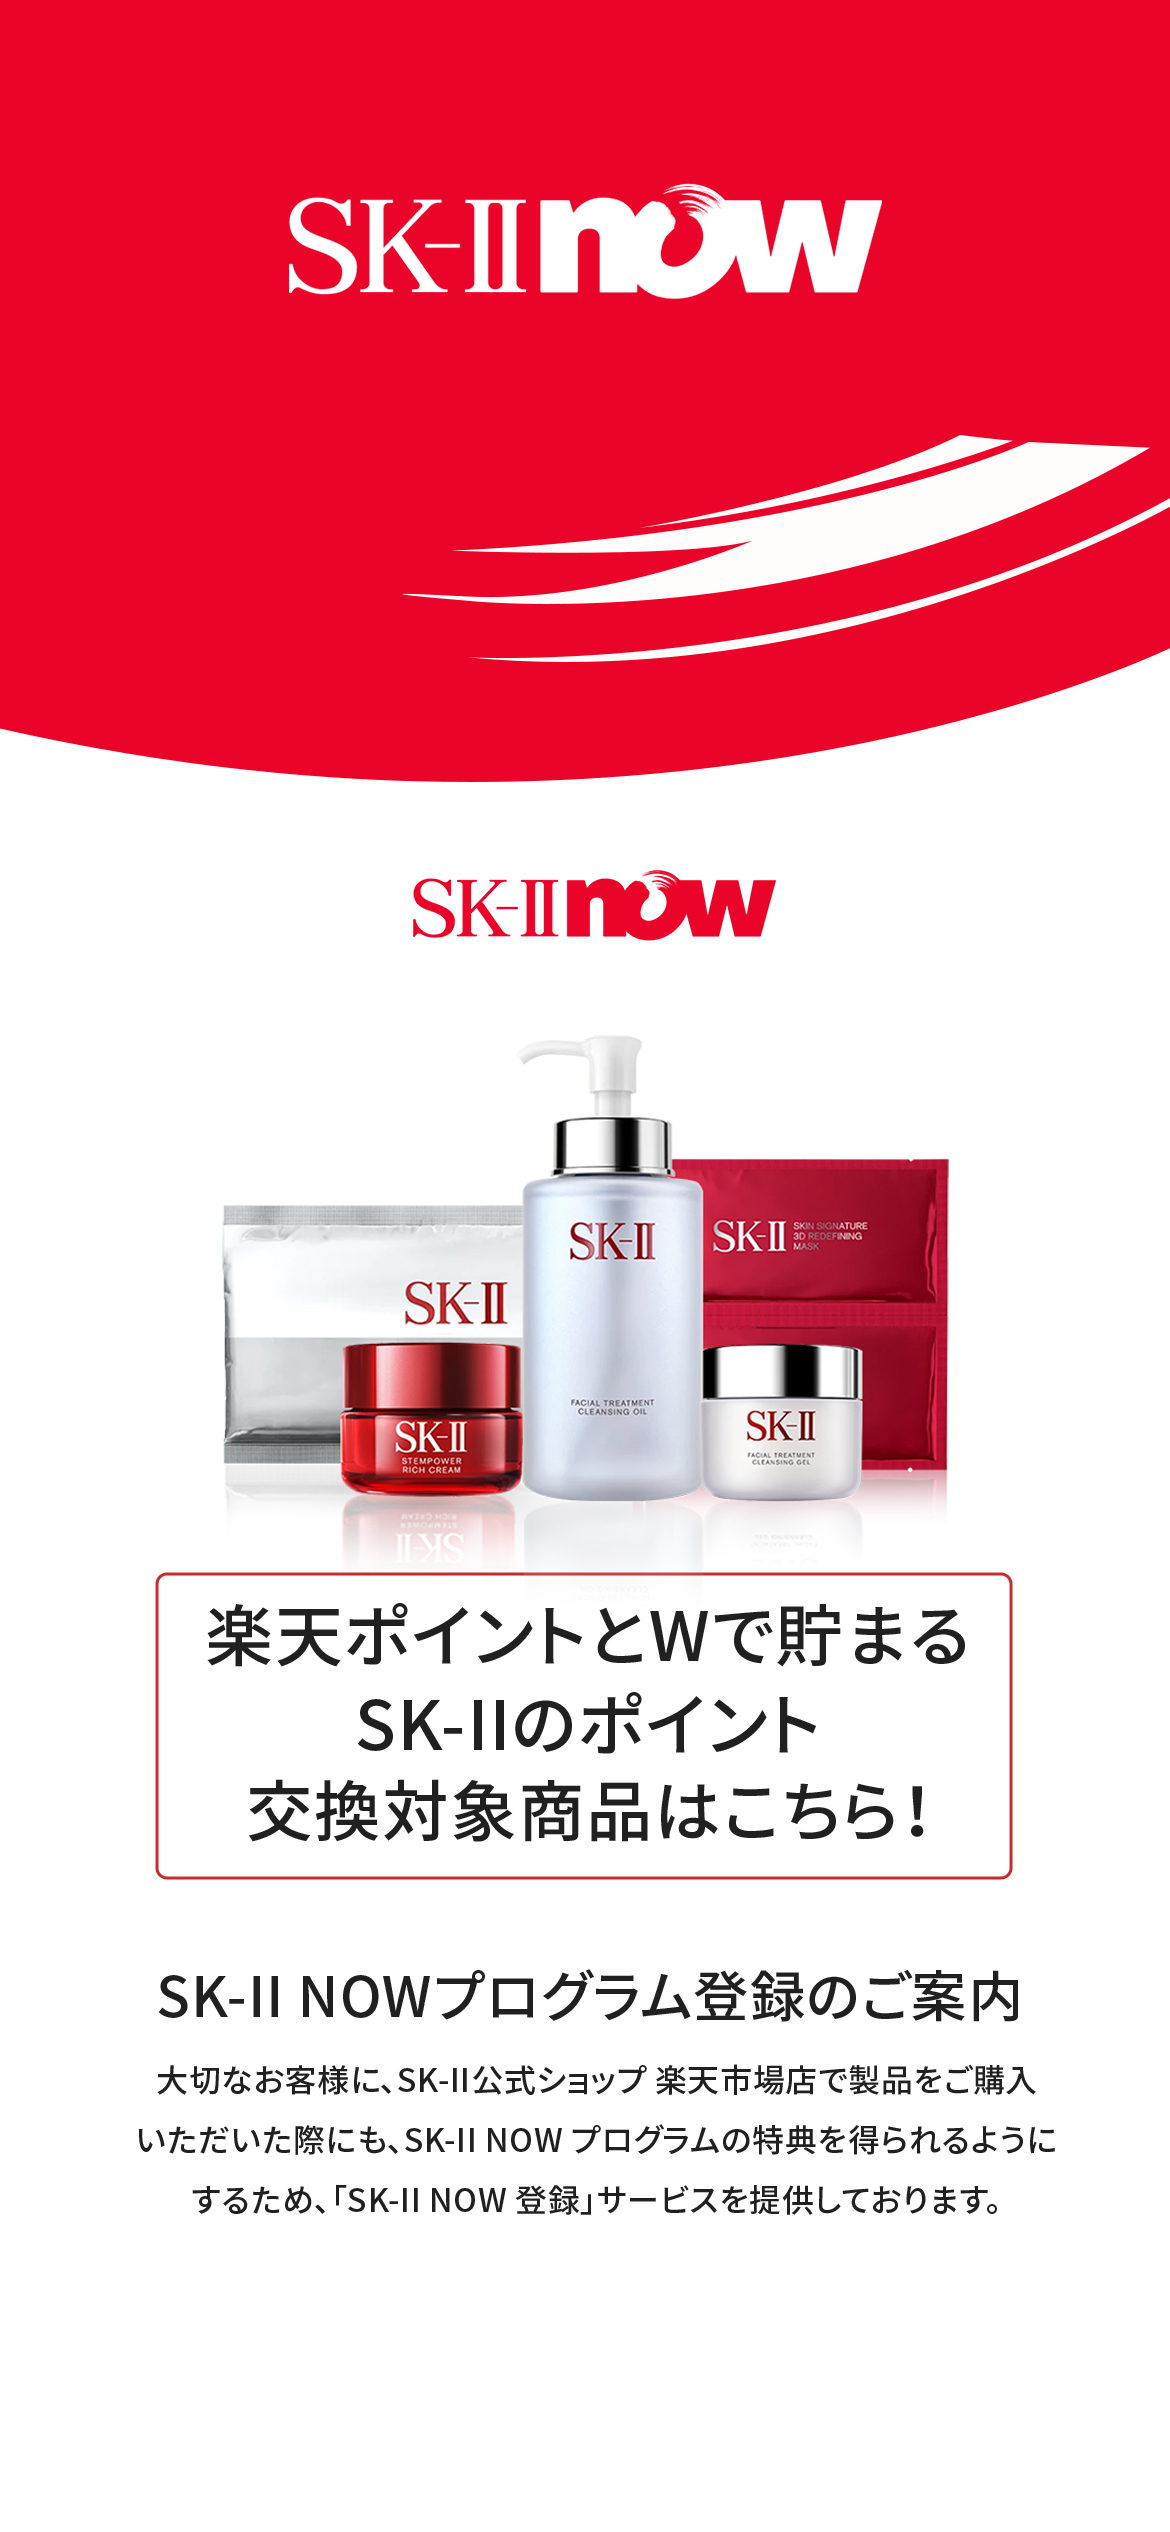 SK-II now